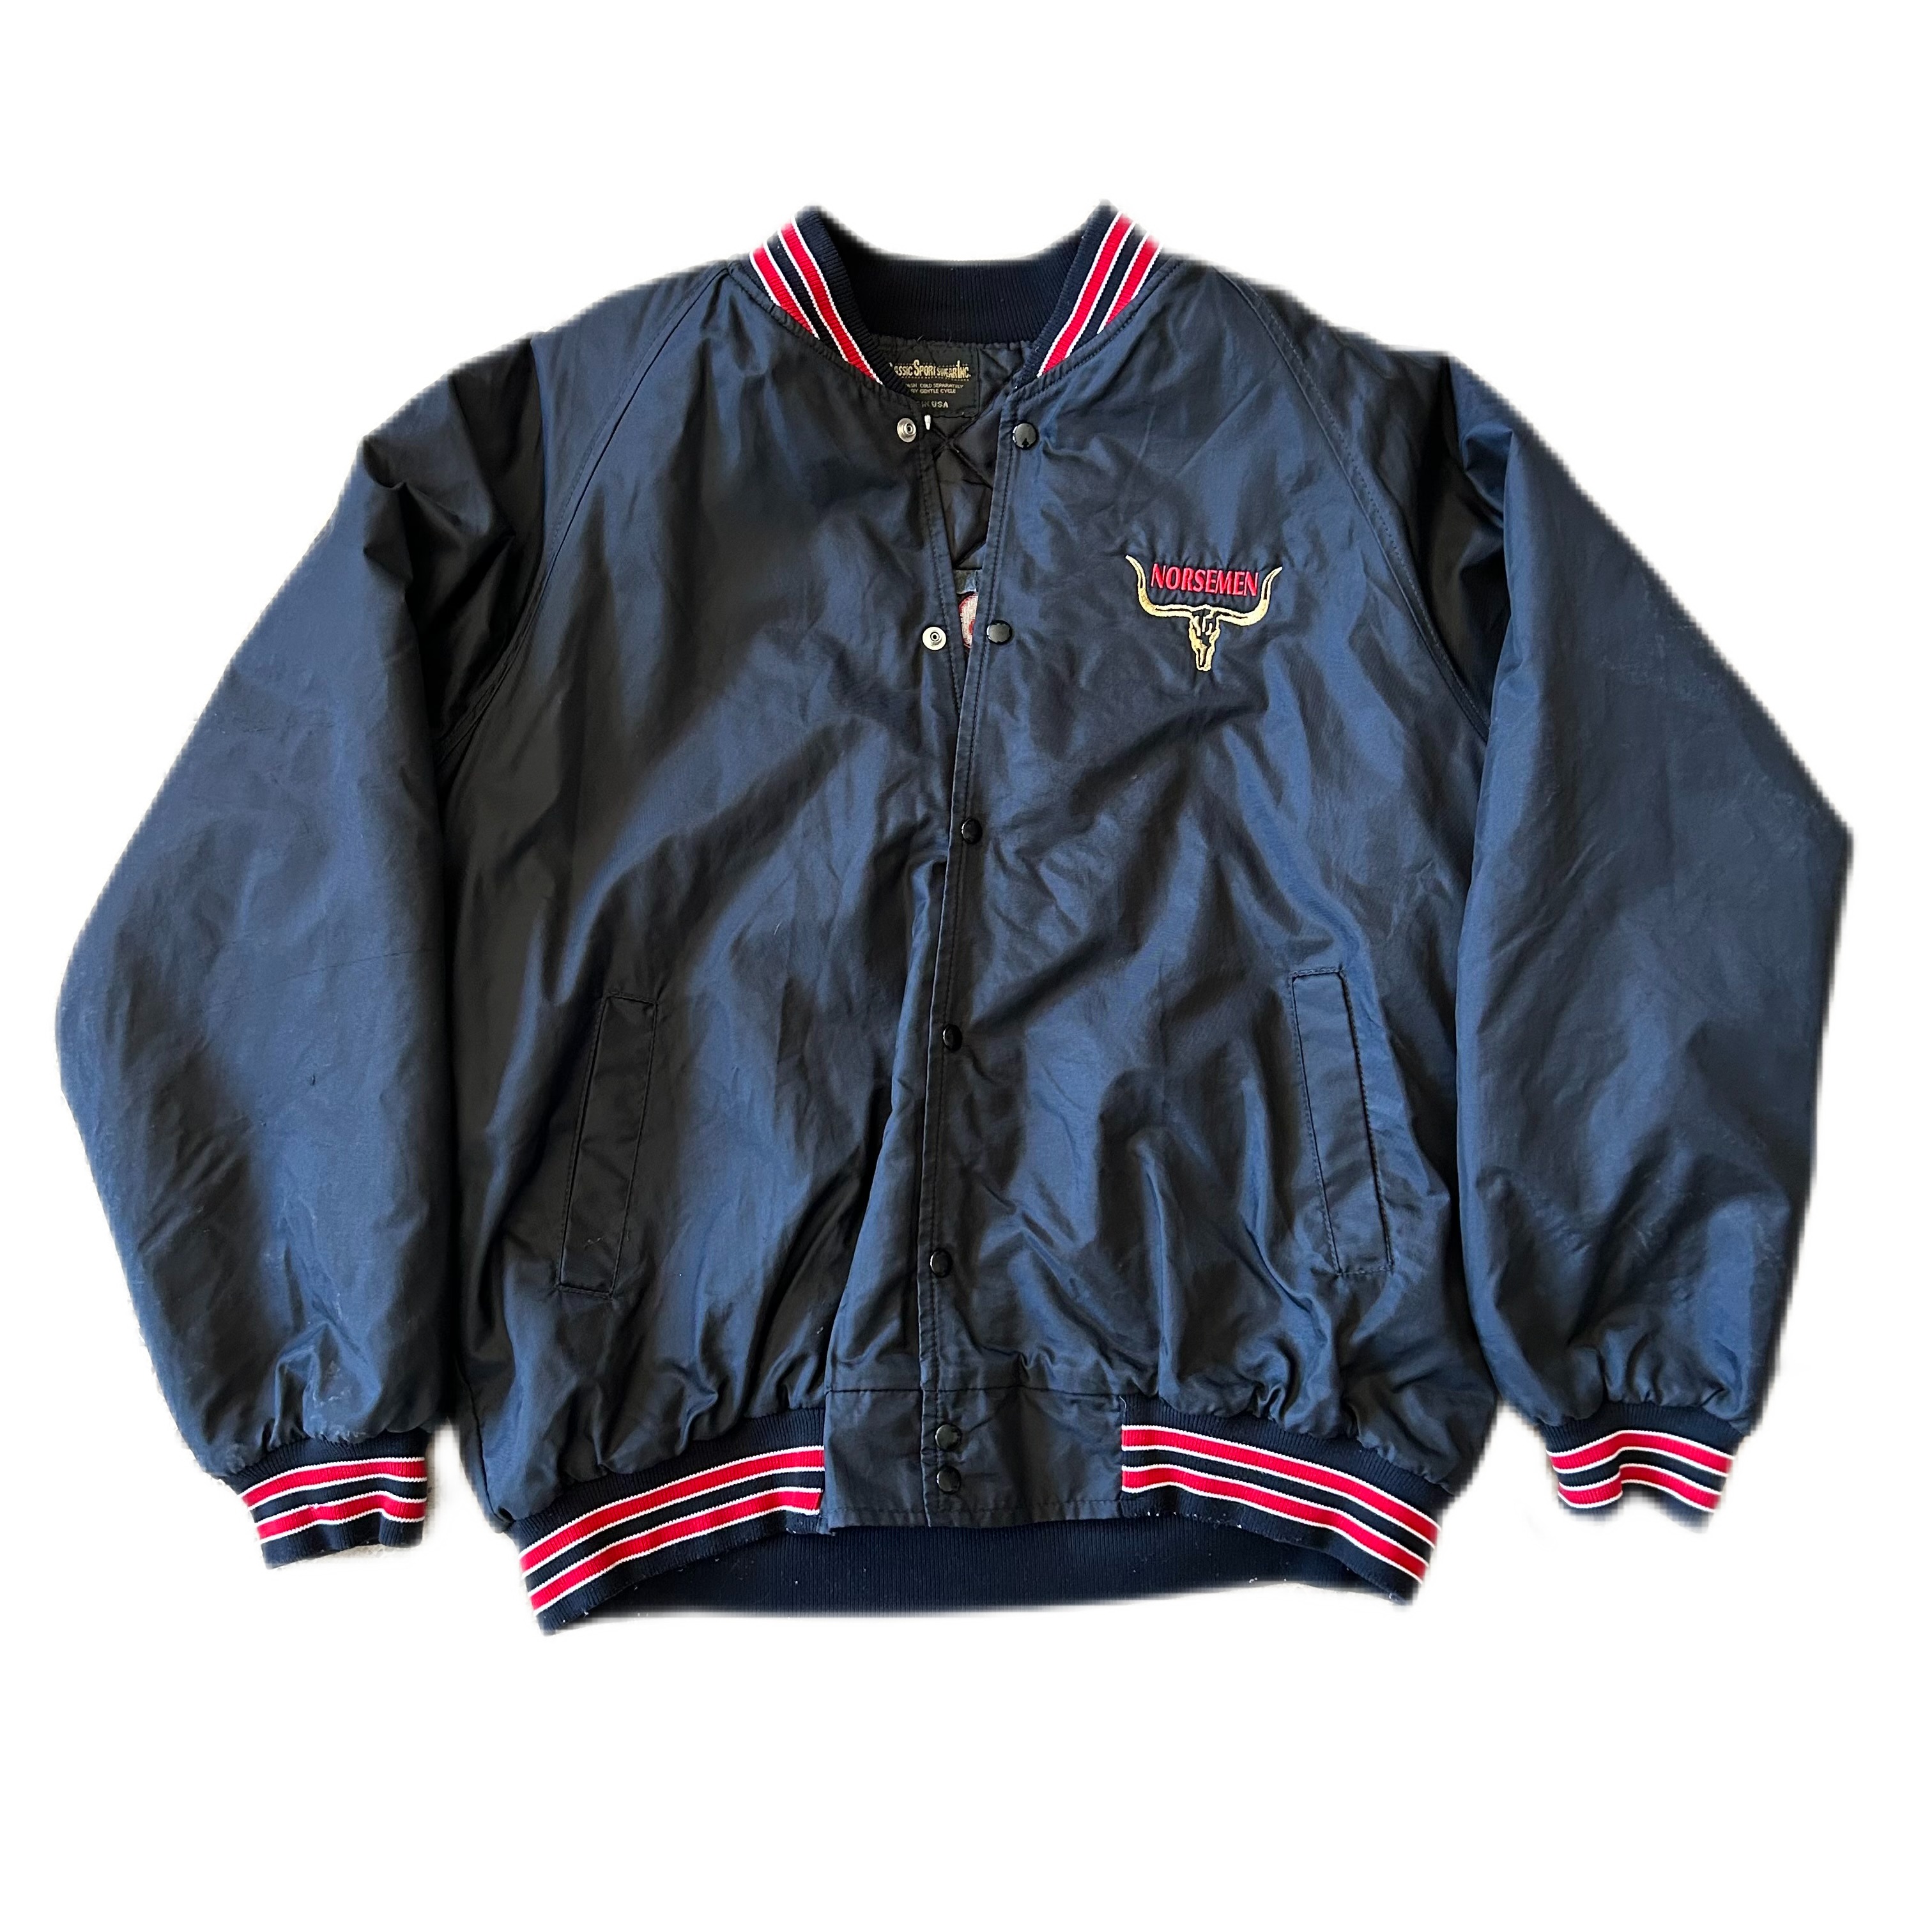 Vintage 1990s Bomber Jacket